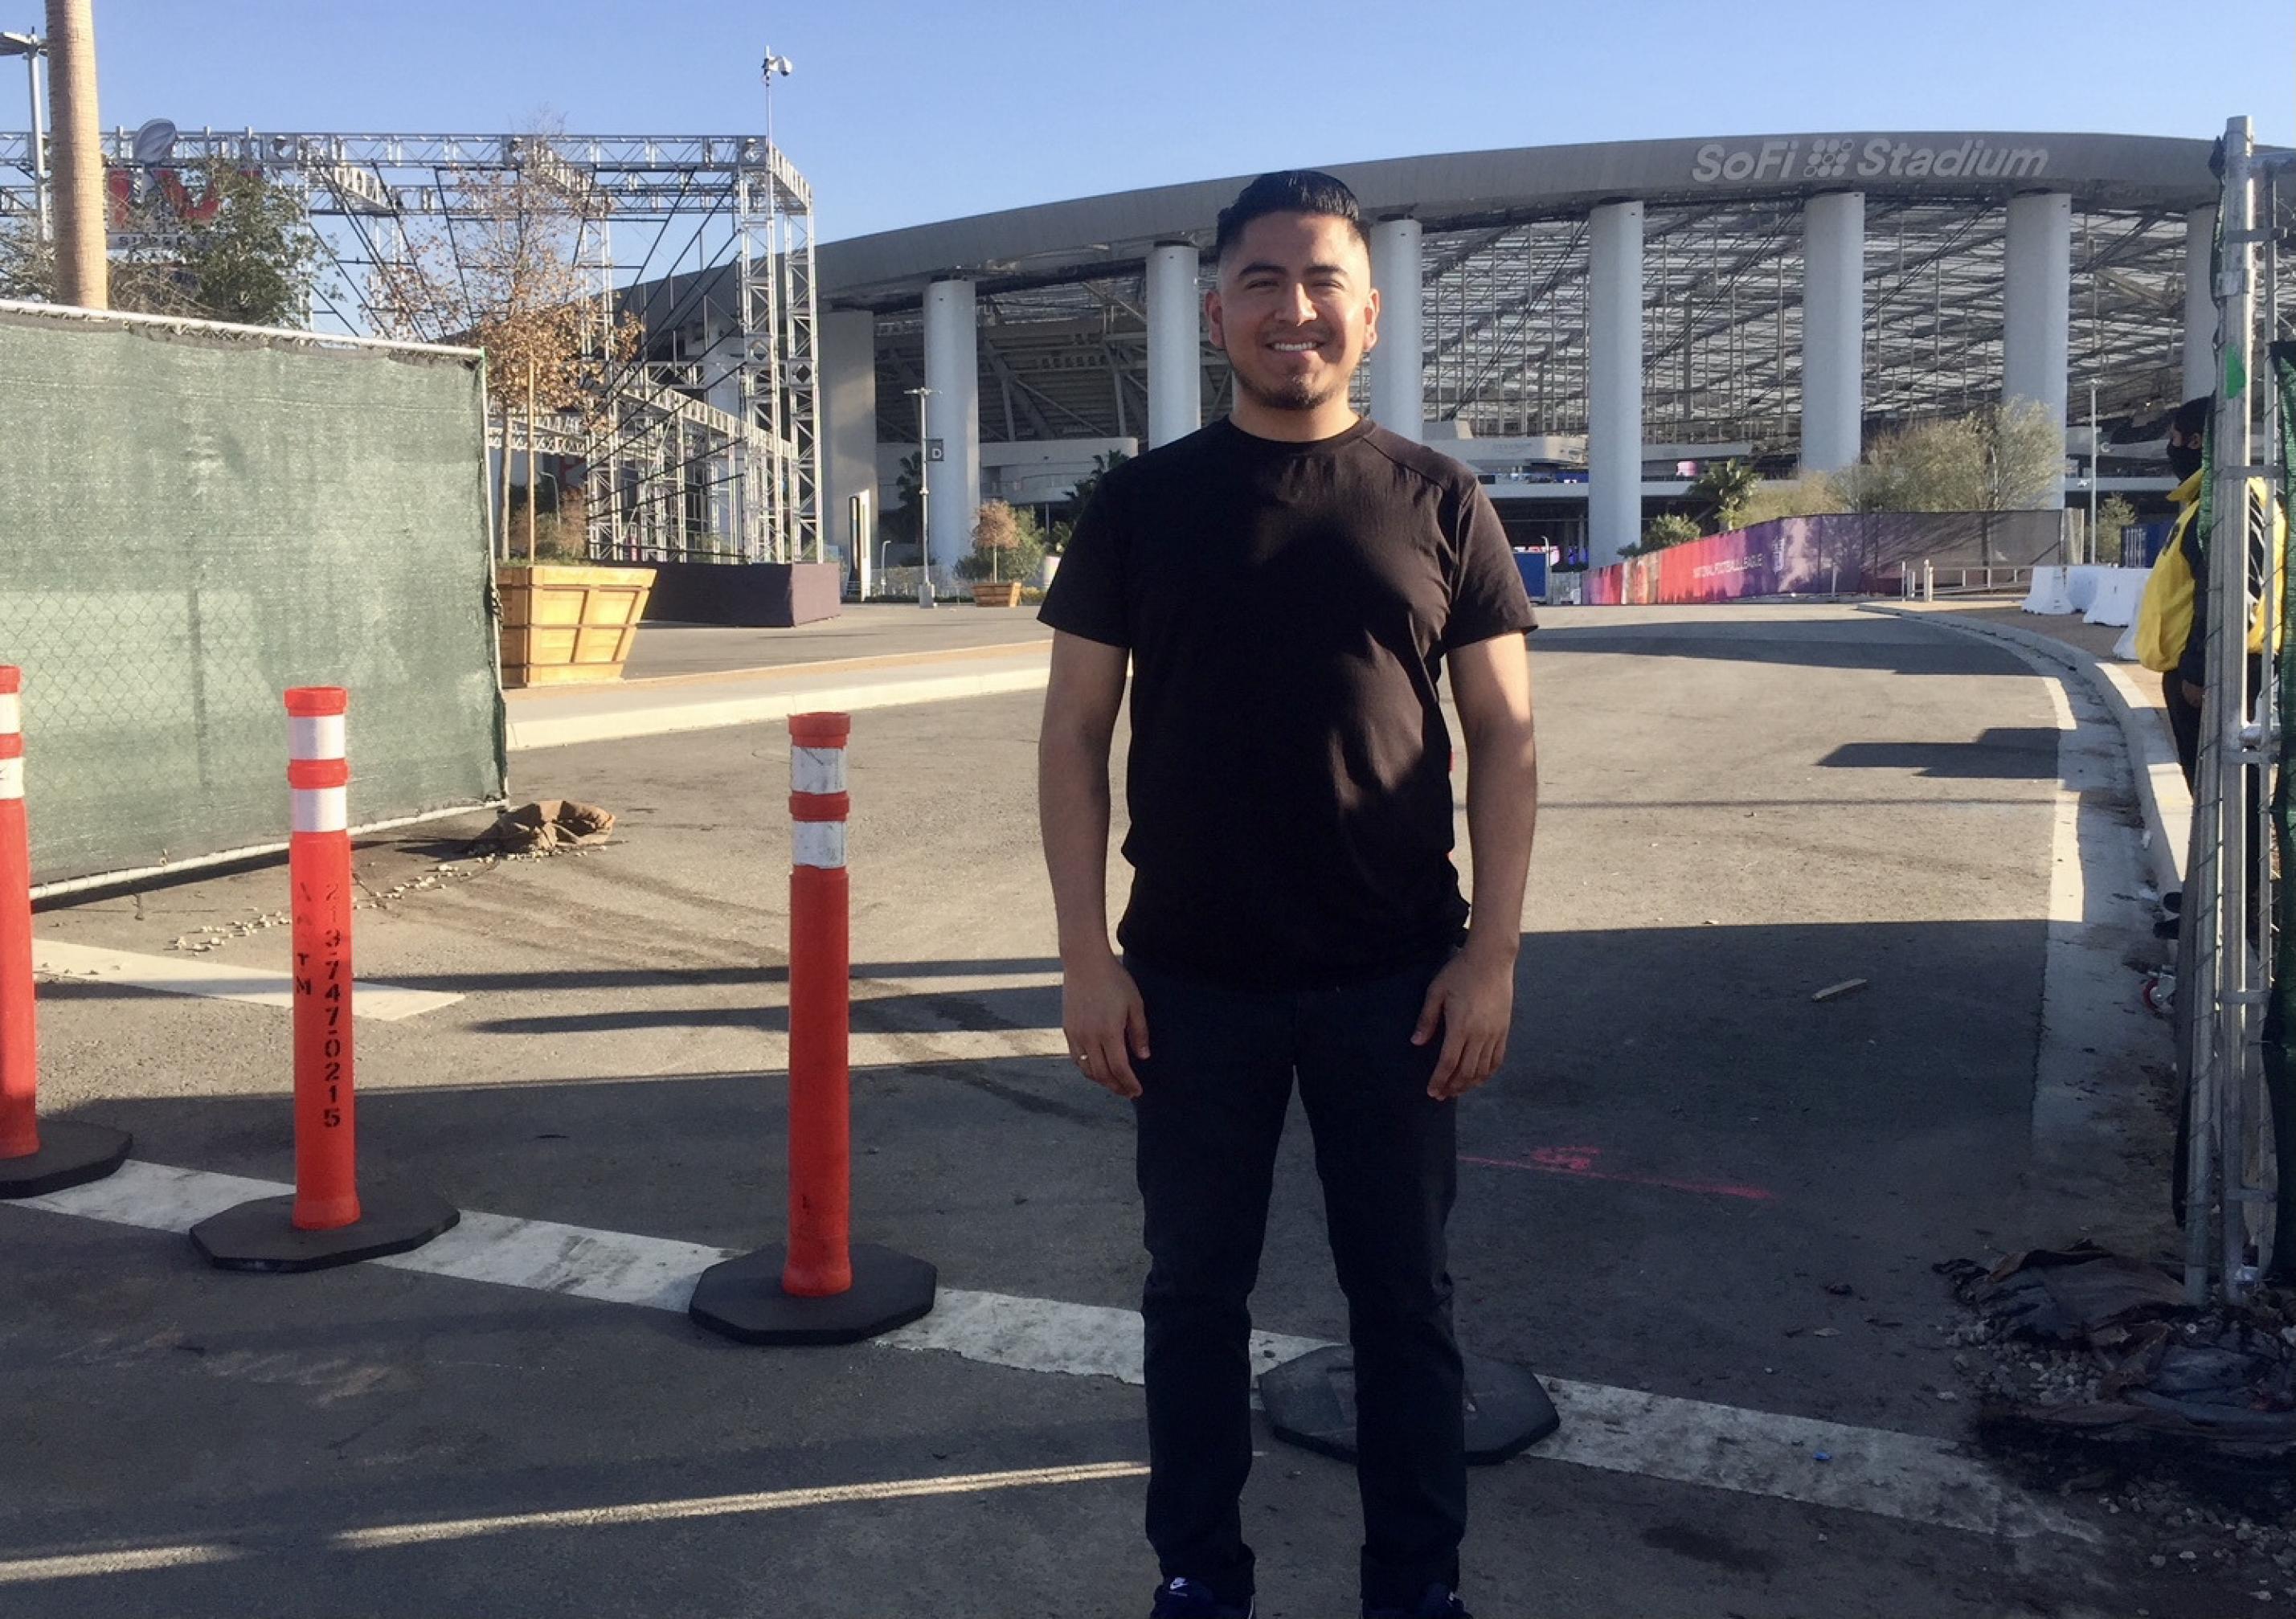 Óscar Alvarez, ein 27 Jahre alter Sozialarbeiter, posiert in schwarzen Jeans und schwarzem T-Shirt vor dem abgesperrten SoFi Stadion. Im Hintergrund ein Gerüst und Pflanzentöpfe.